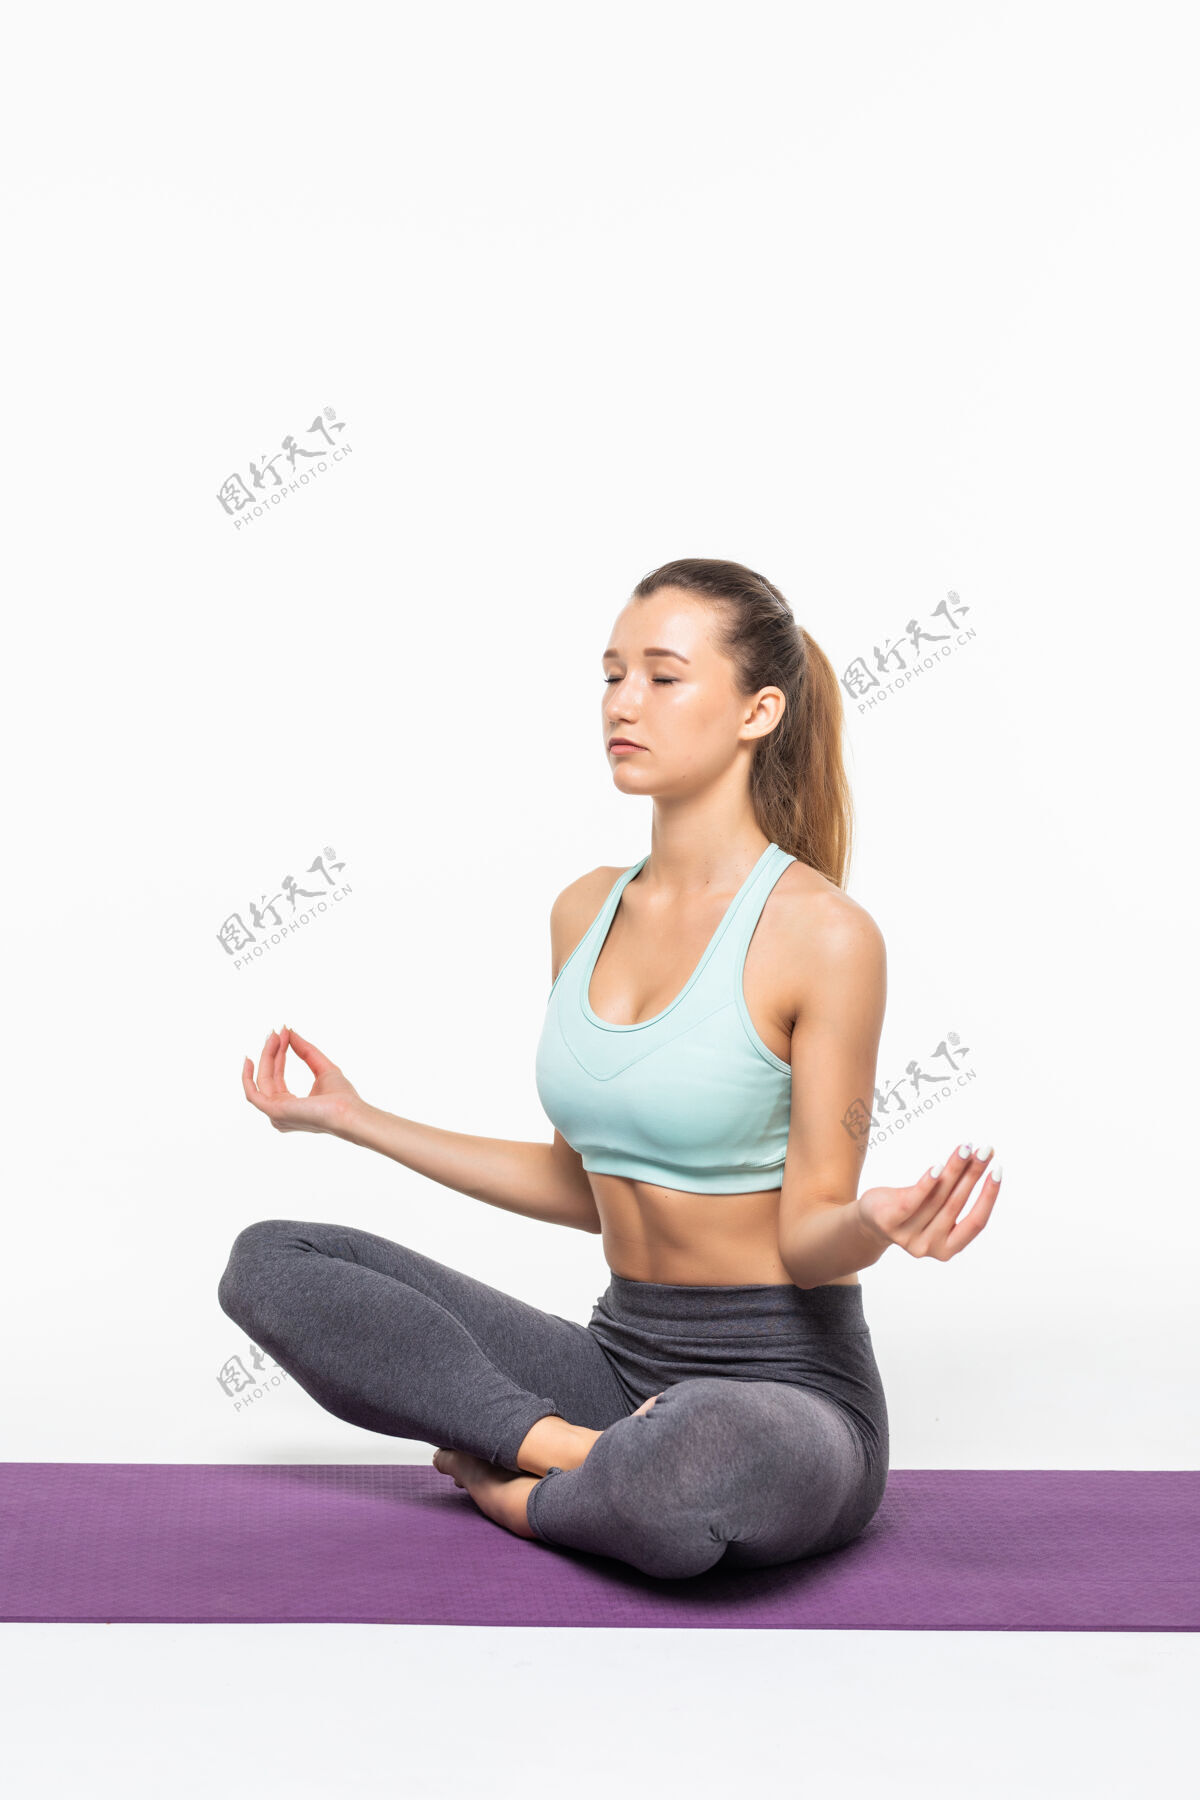 健康安静漂亮的女人做瑜伽练习休息坐着美丽